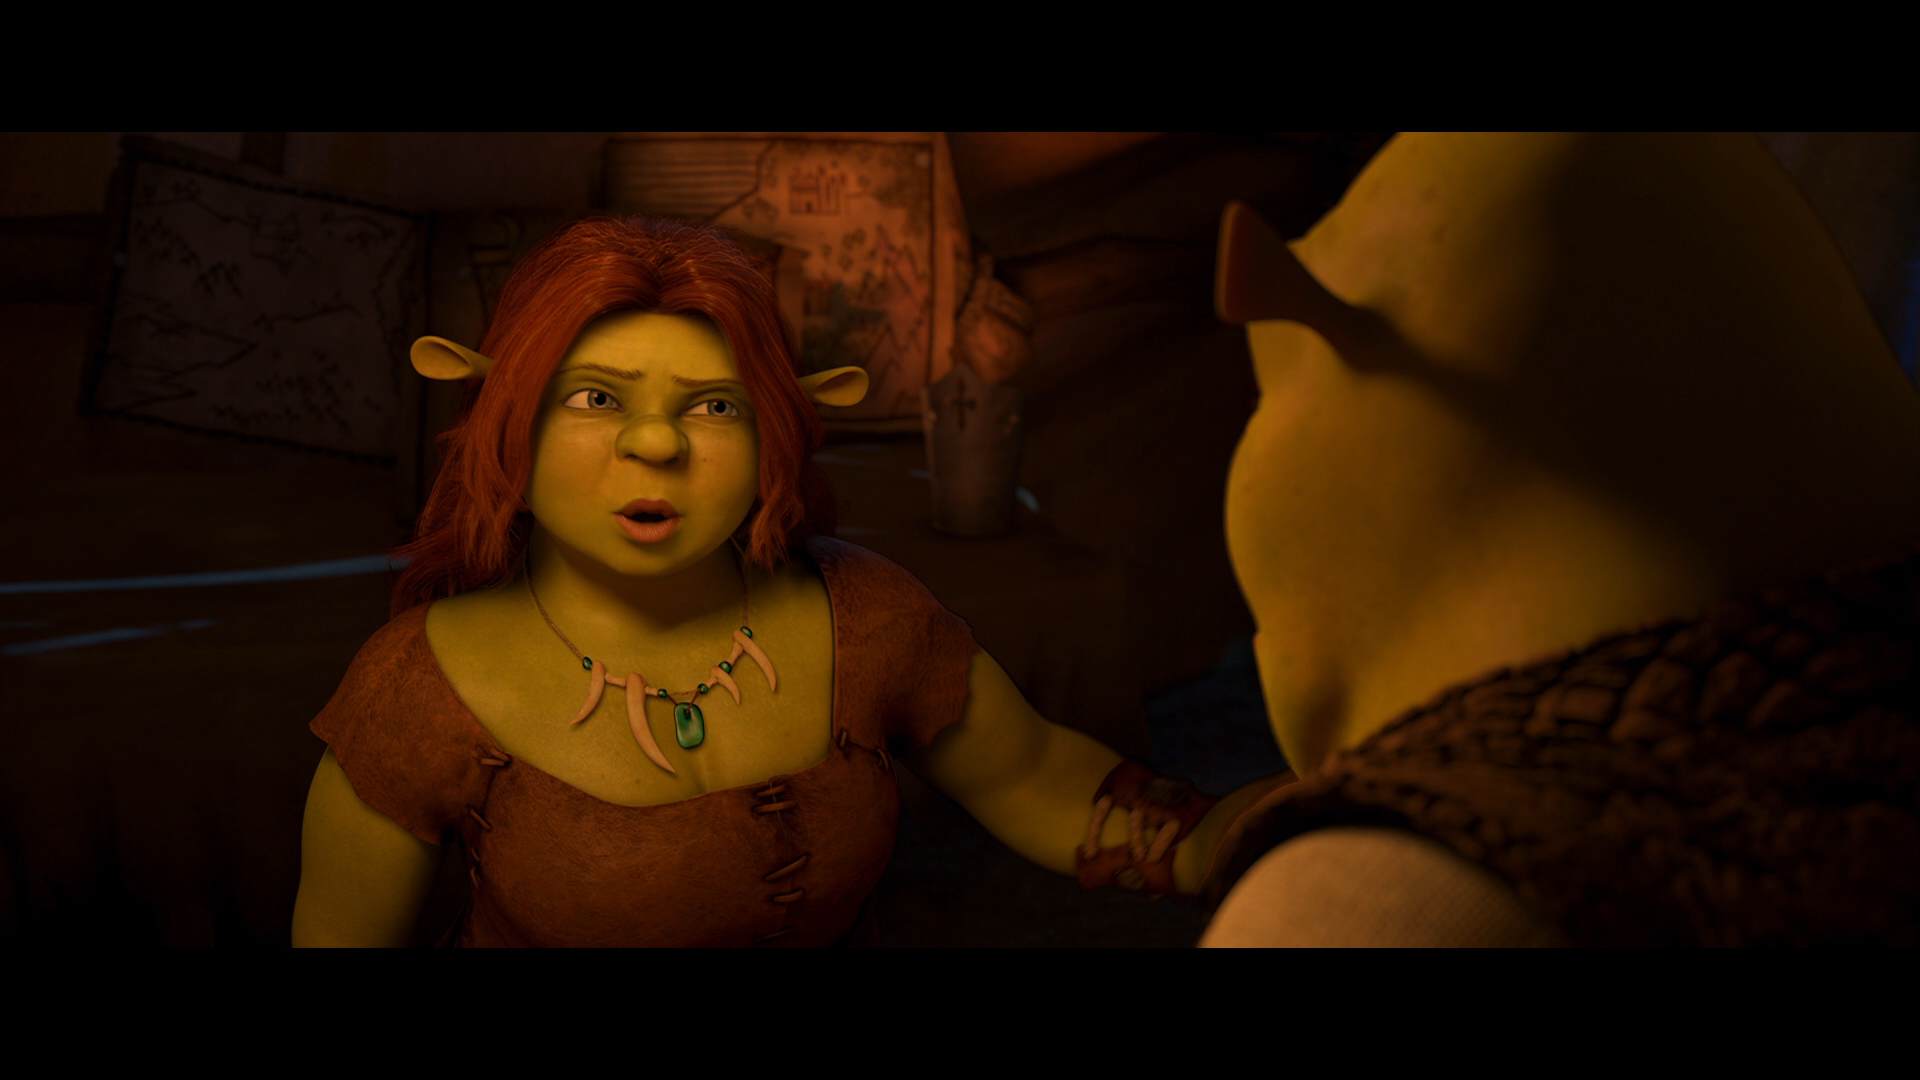 [怪物史瑞克4].Shrek.Forever.After.2010.2D.BluRay.1080p.AVC.TrueHD.7.1-Sm07   27.49G-2.png